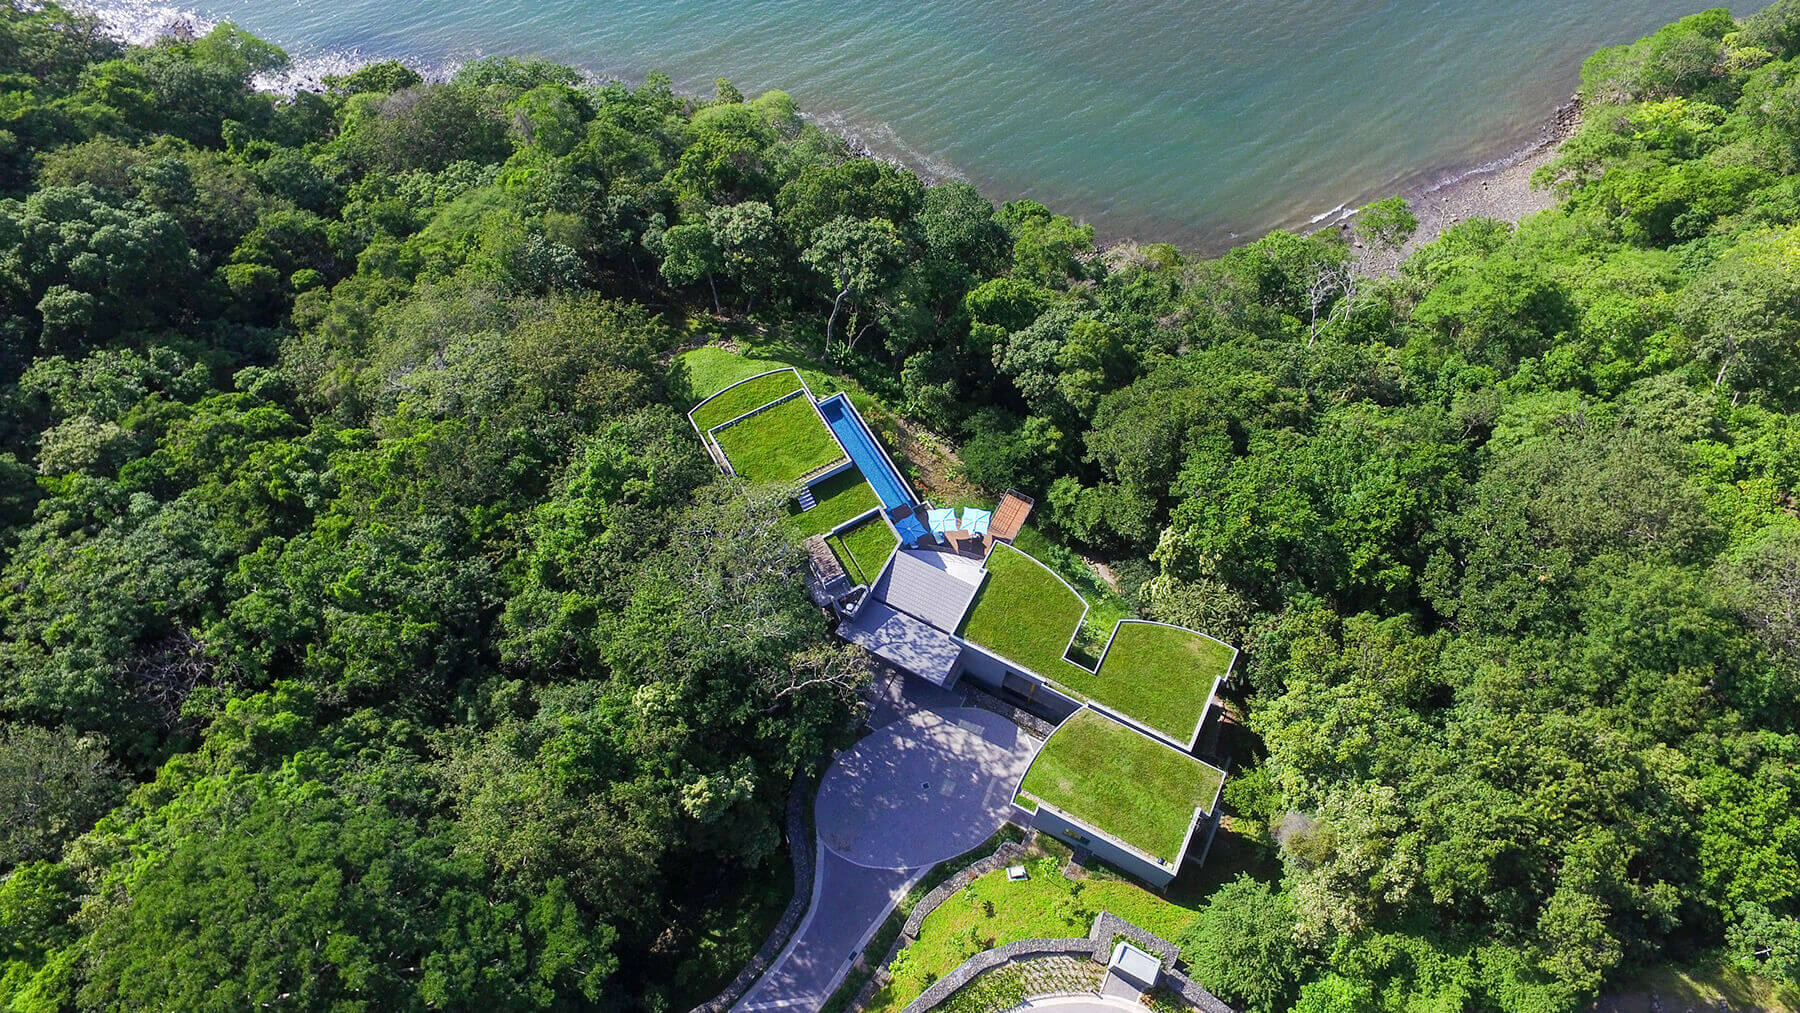 خانه مخفی مجلل با دکوراسیون زیبا در کاستاریکا